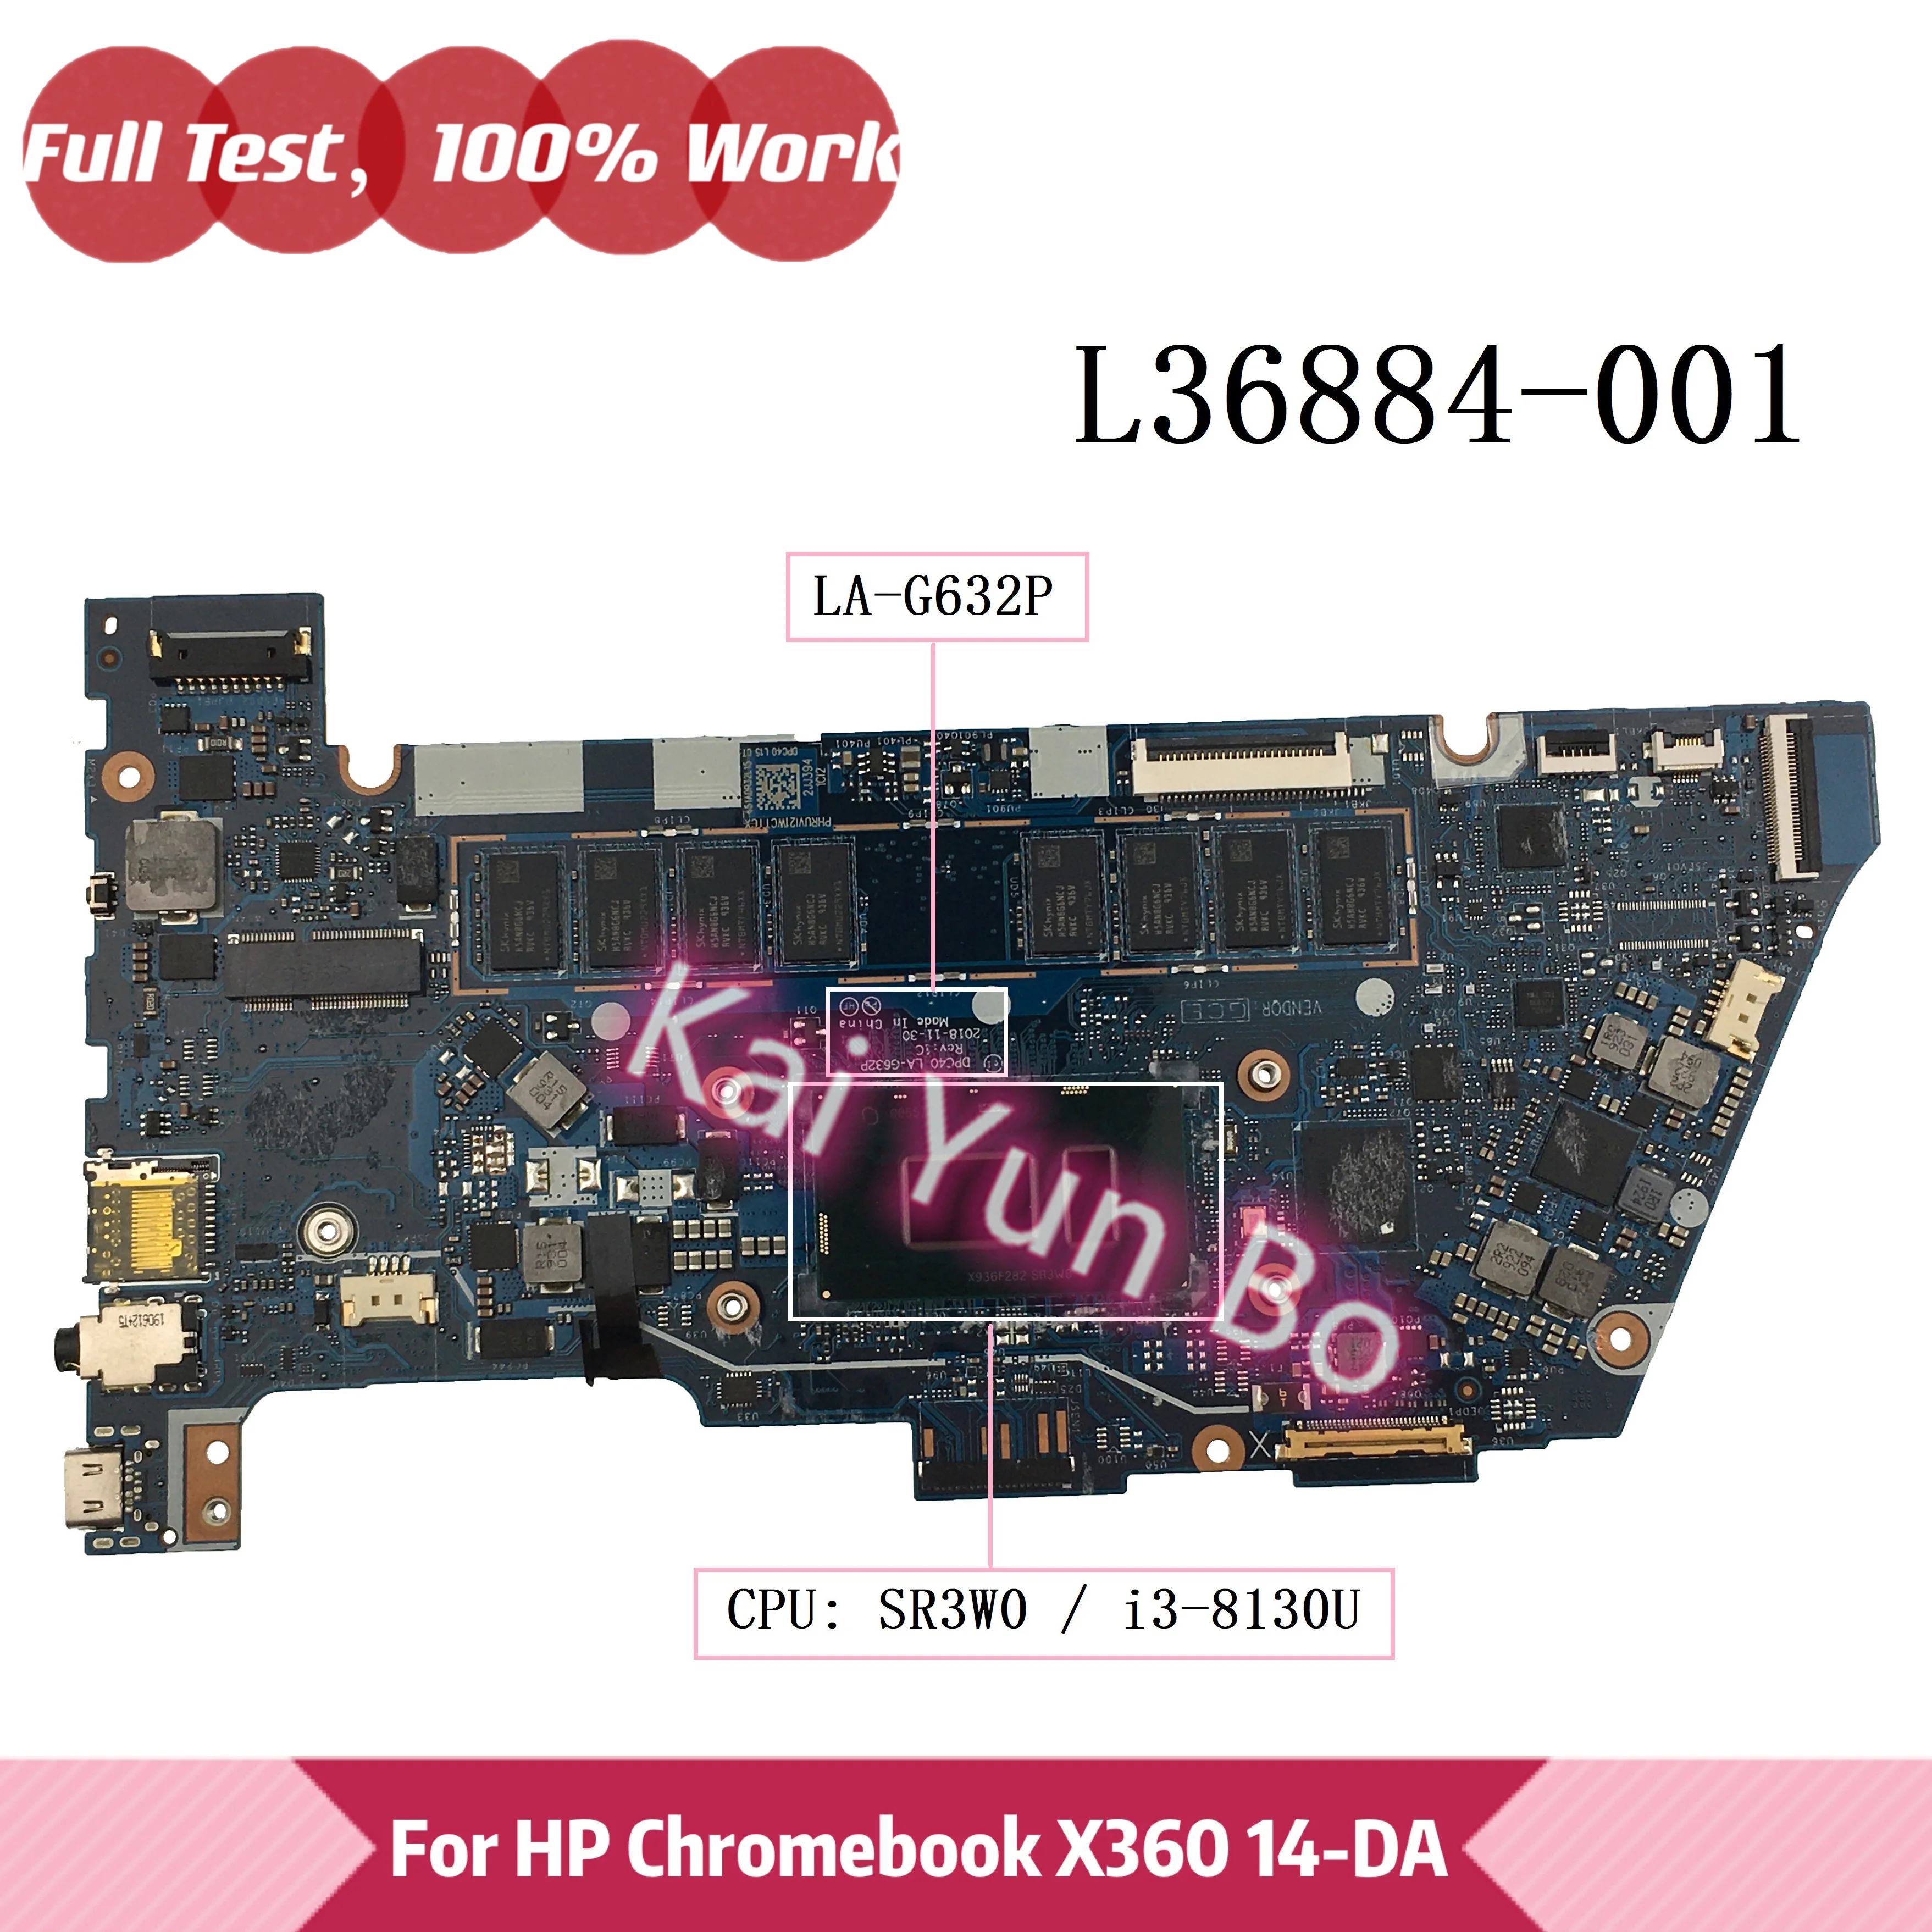 

L36884-601 LA-G632P For HP Chromebook x360 14 G1 14-DA Laptop Motherboard L36884-001 with i3-8130U CPU 8GB RAM 100% Tested OK